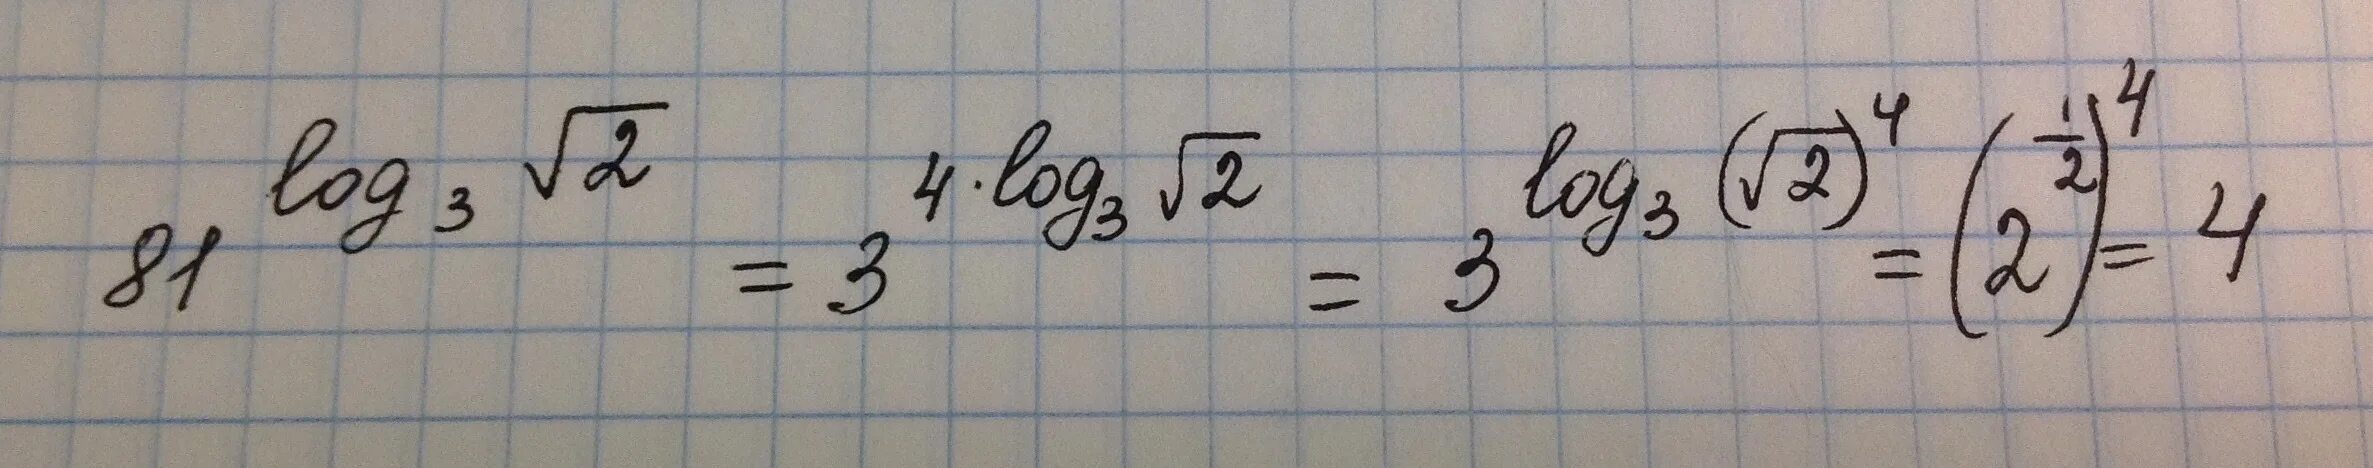 Вычислить 2 корень 81. Логарифм по основанию корень из 3. Логарифм по основанию корень из 2. Логарифм корень из 3 по основанию 2. Логарифм корня из трех по основанию три.